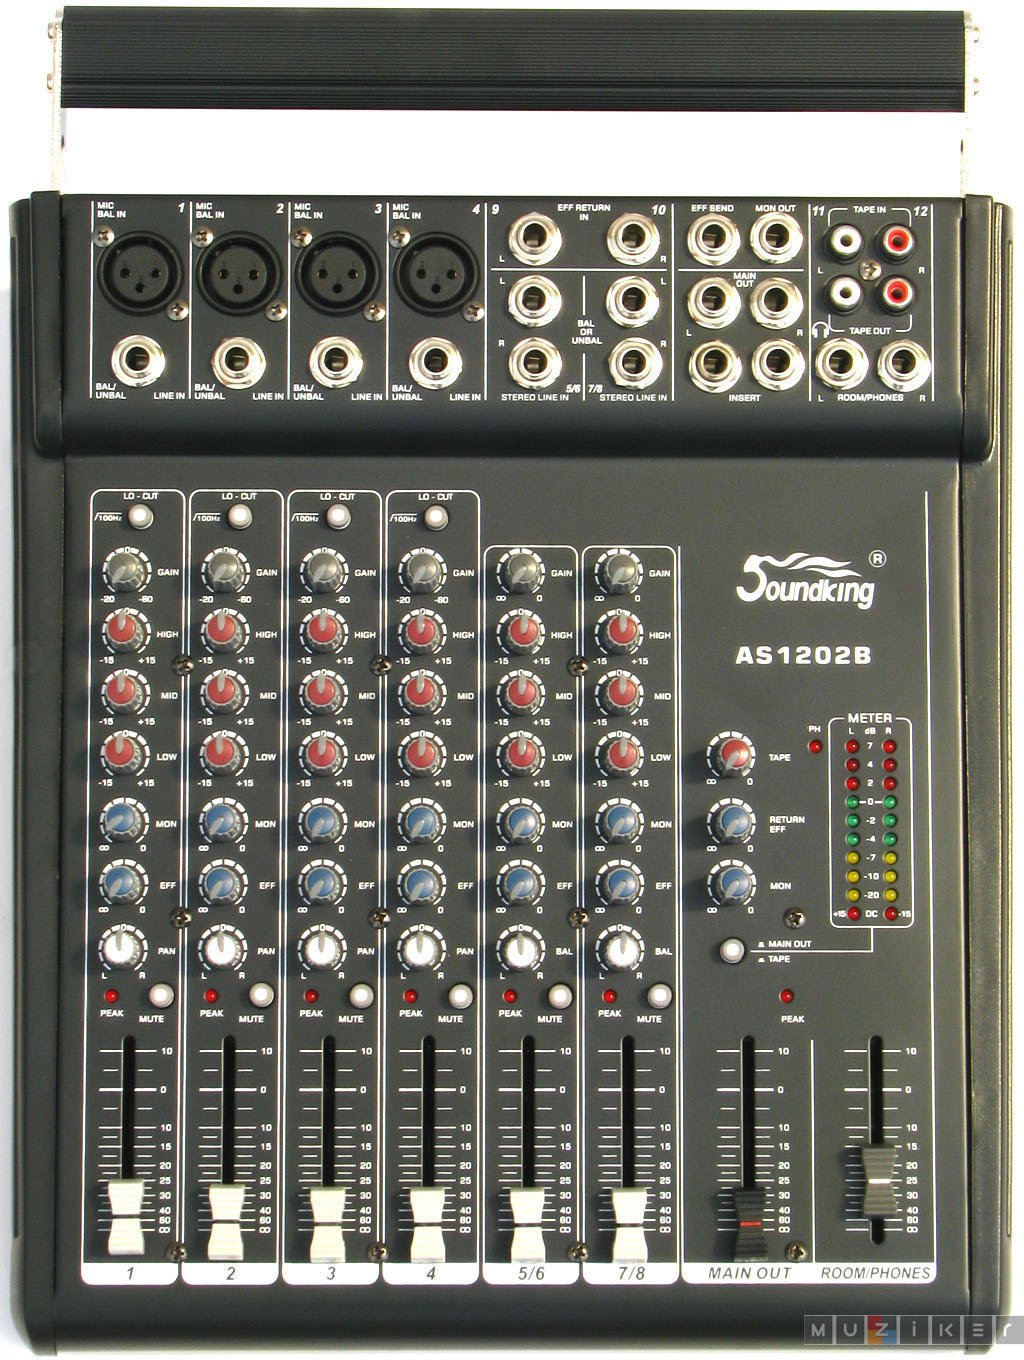 Table de mixage analogique Soundking AS 1202 B